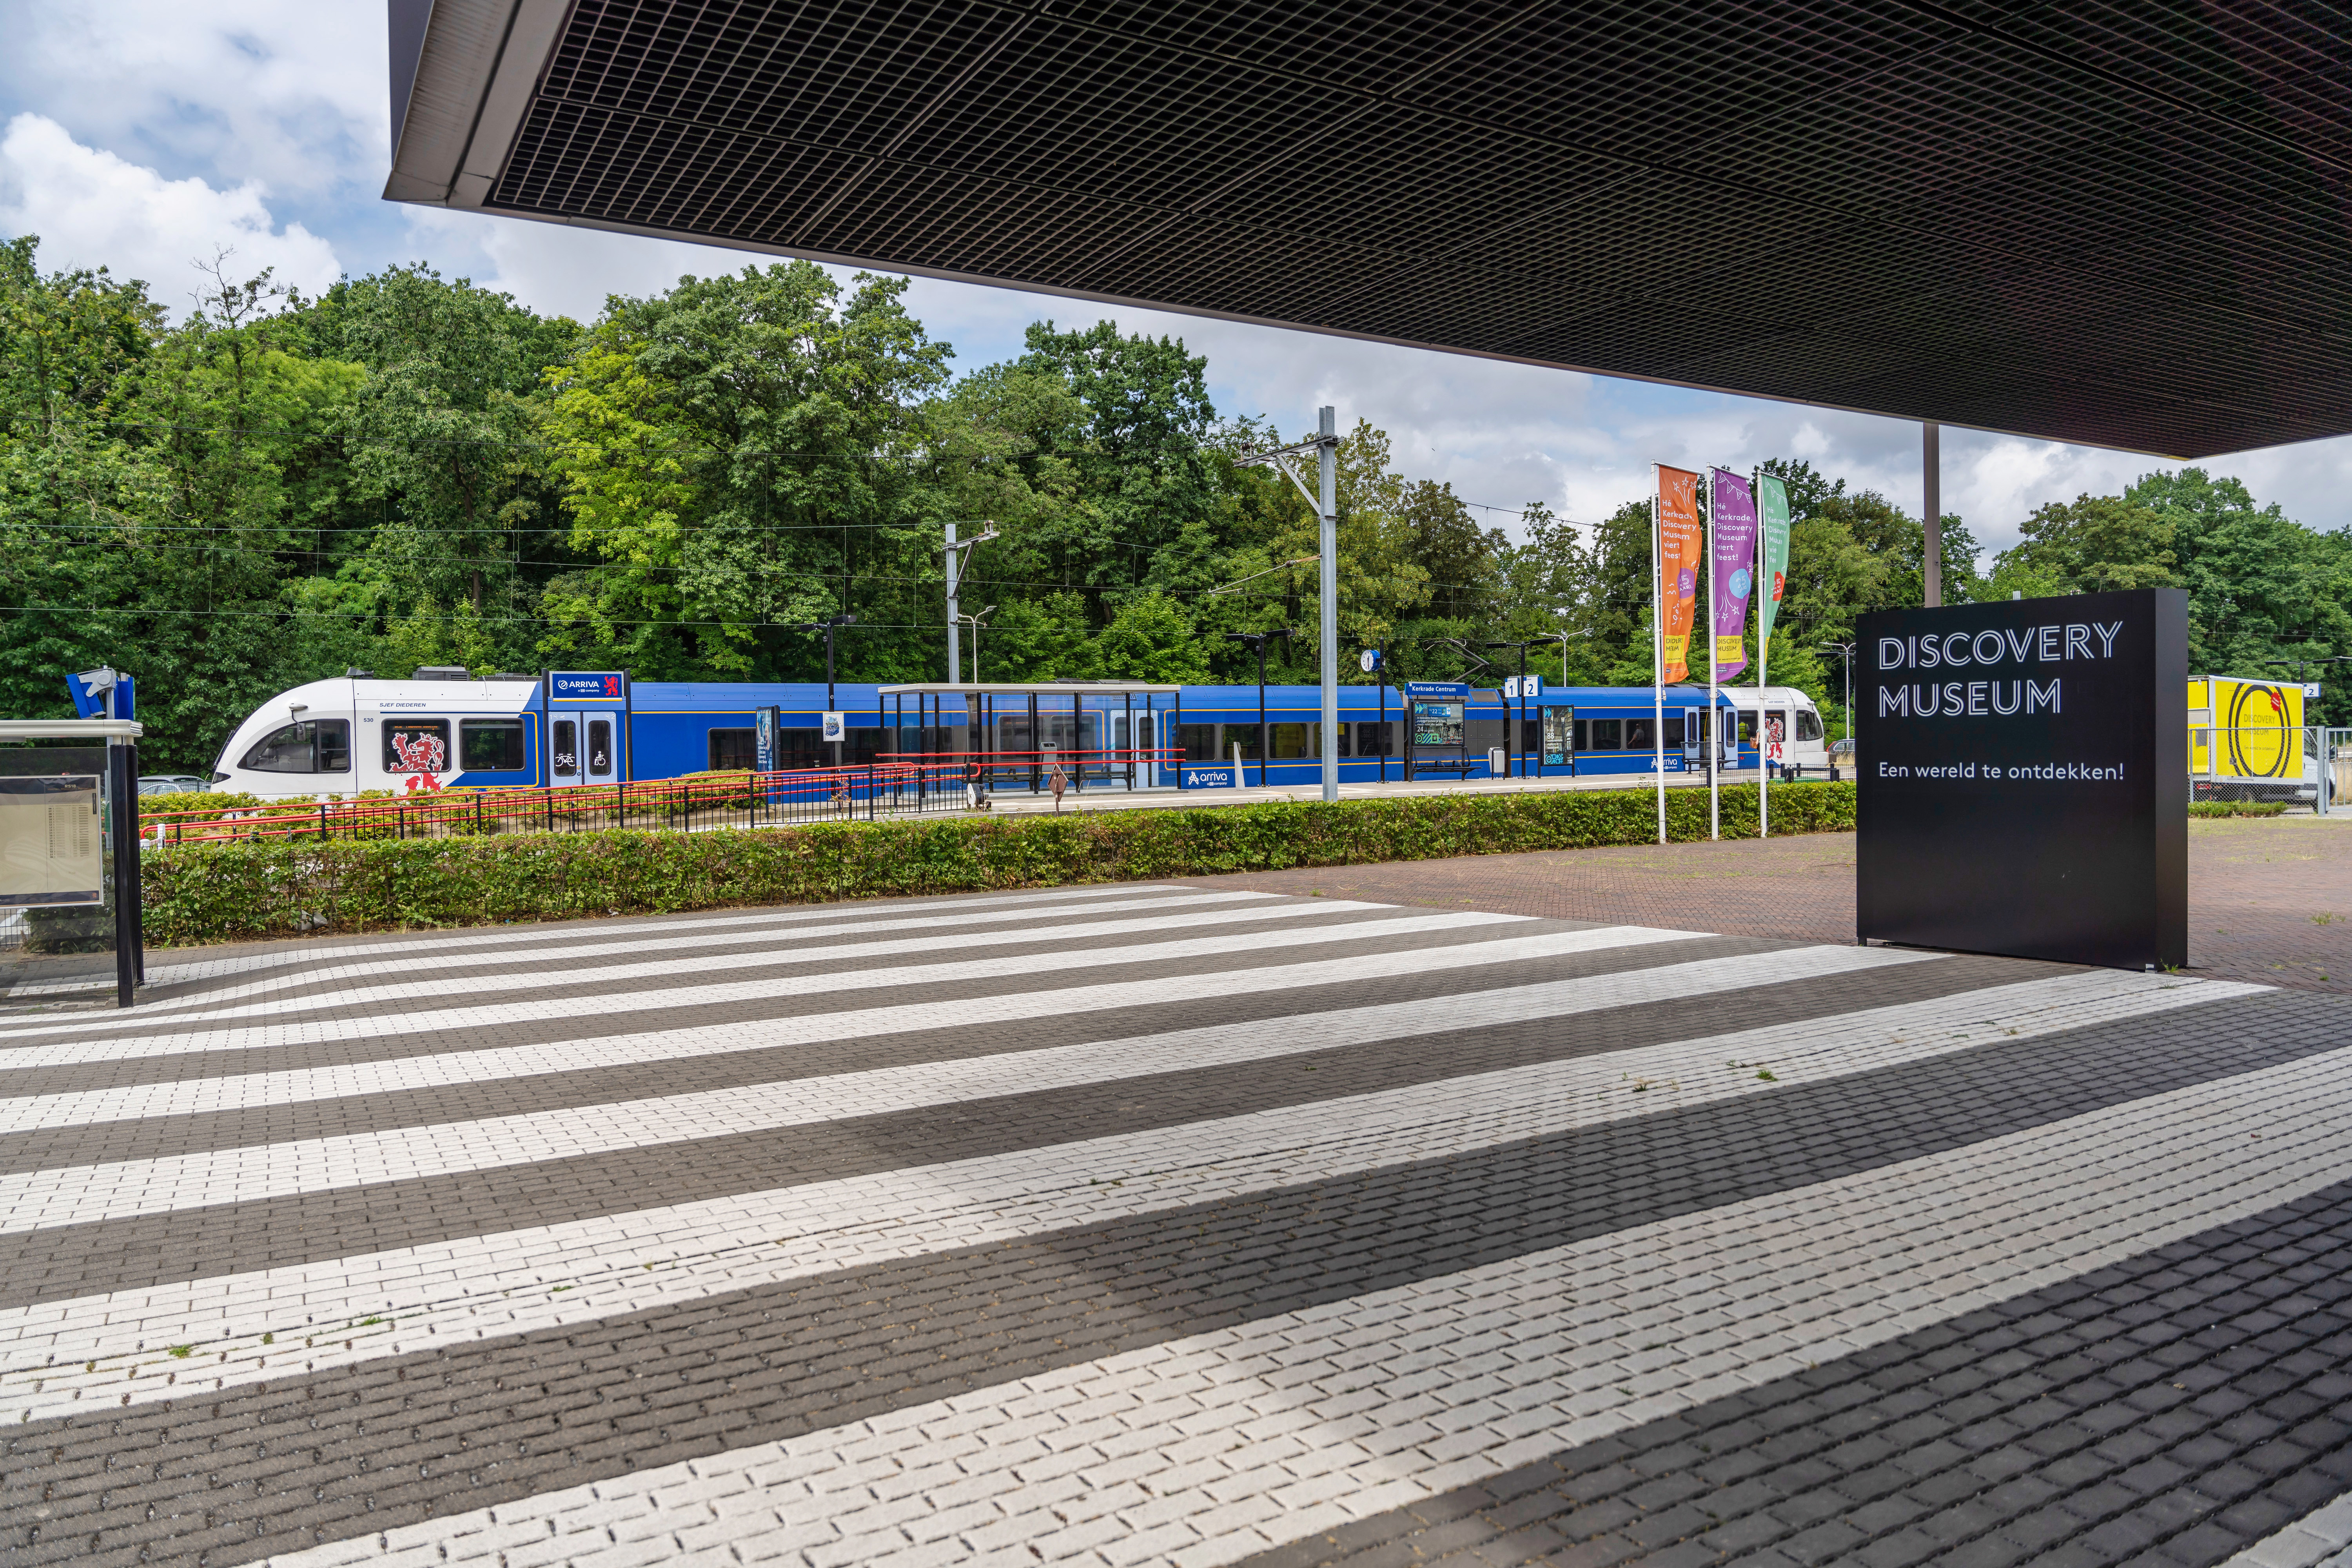 Blauwwitte trein van Arriva staat aan perron van station Kerkrade, op de voorgrond een zebrapad en een bordje met 'Discovery Museum'.